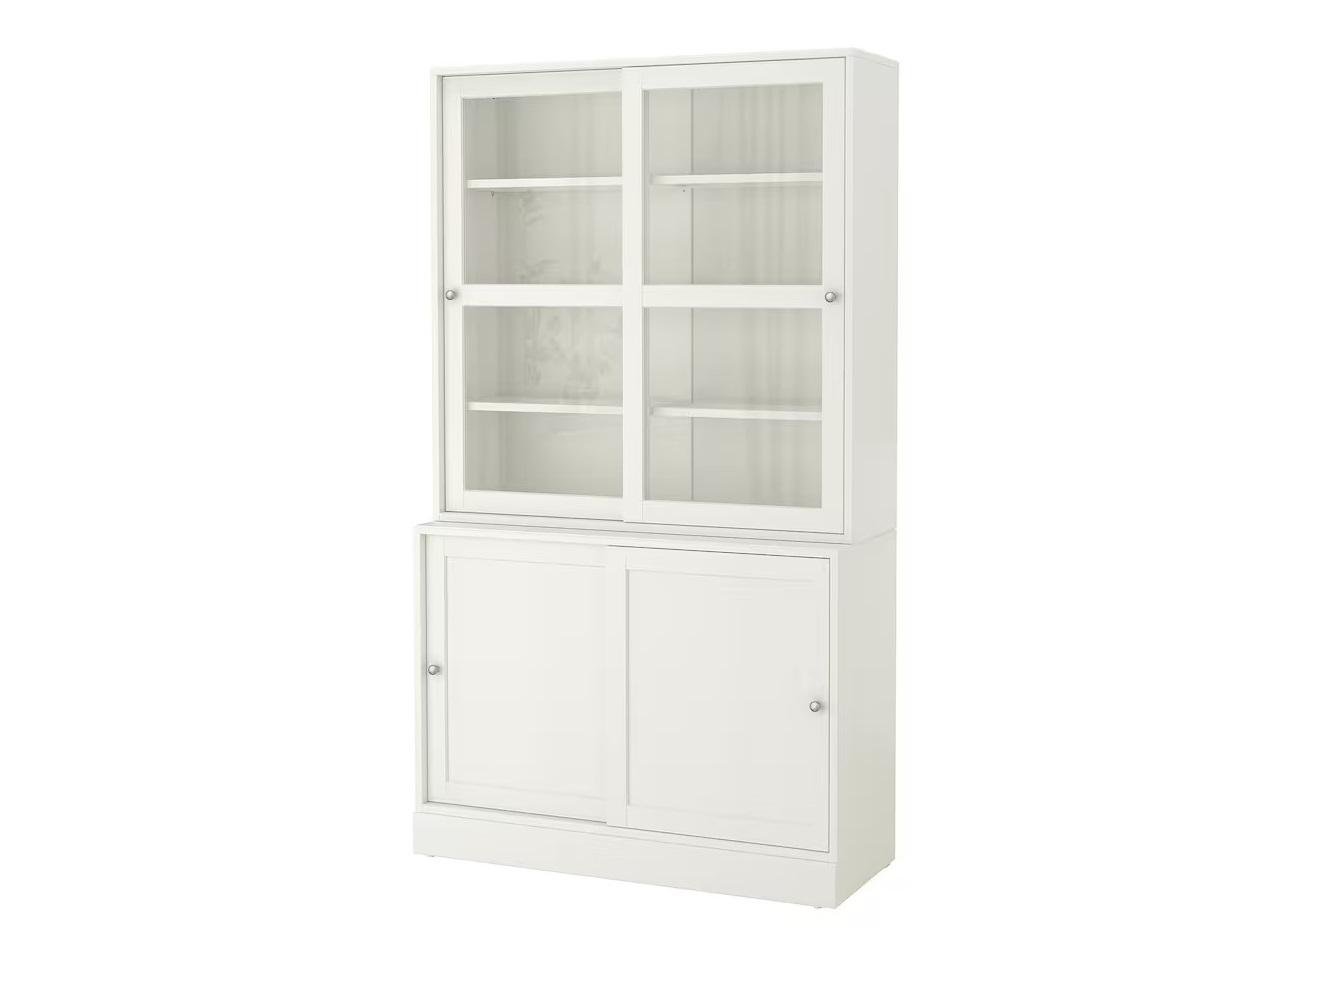 Изображение товара Книжный шкаф Хавста 12 white ИКЕА (IKEA), 121x47x212 см на сайте adeta.ru